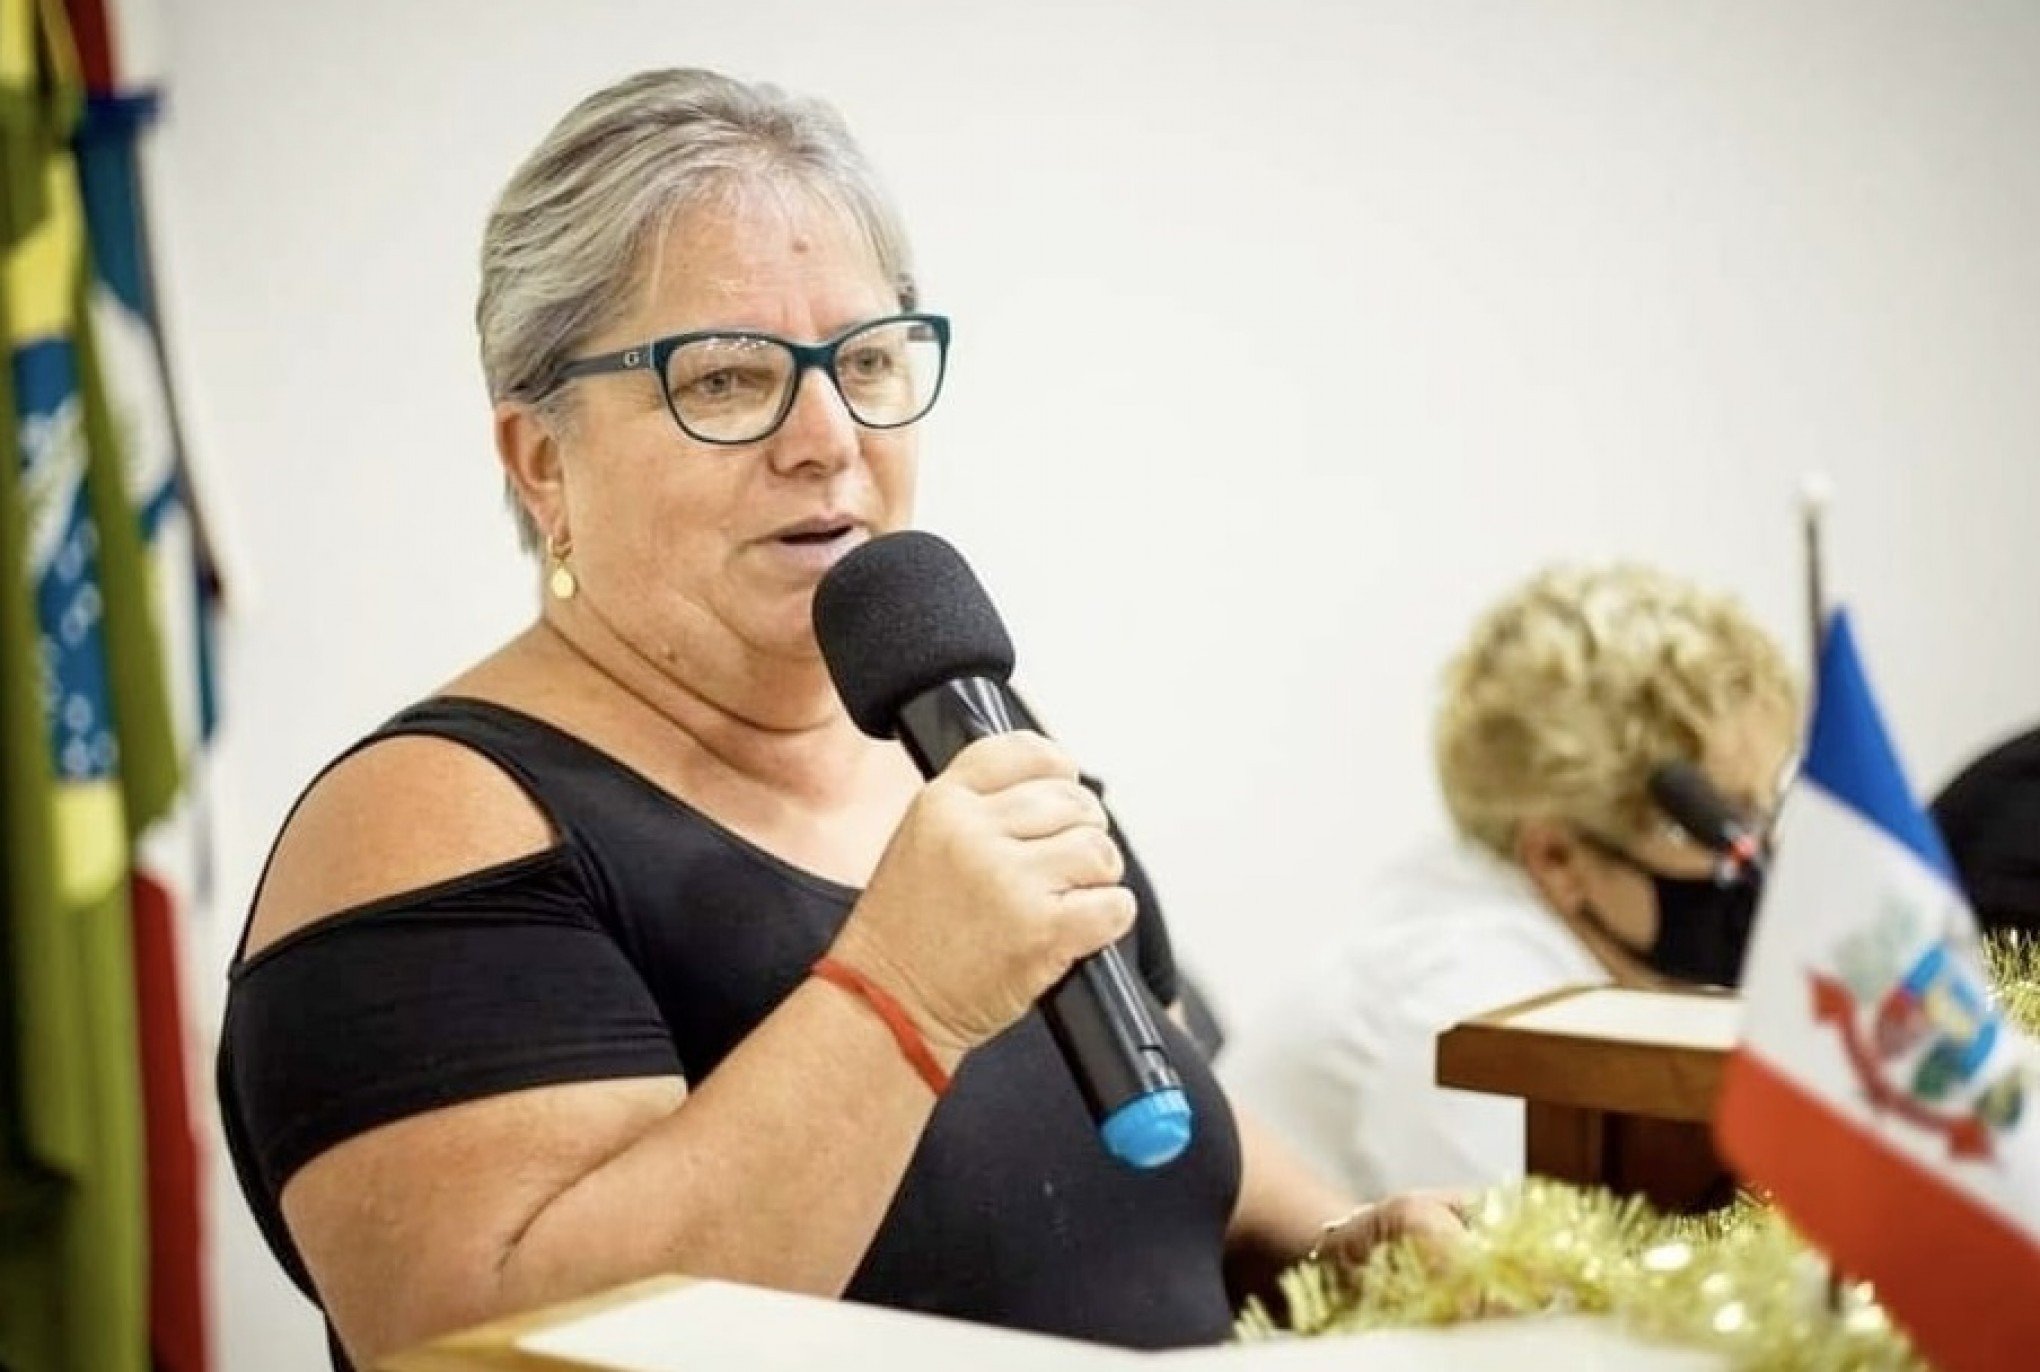 "Dedicou sua vida ao serviço público": Vereadora de cidade da região morre aos 60 anos